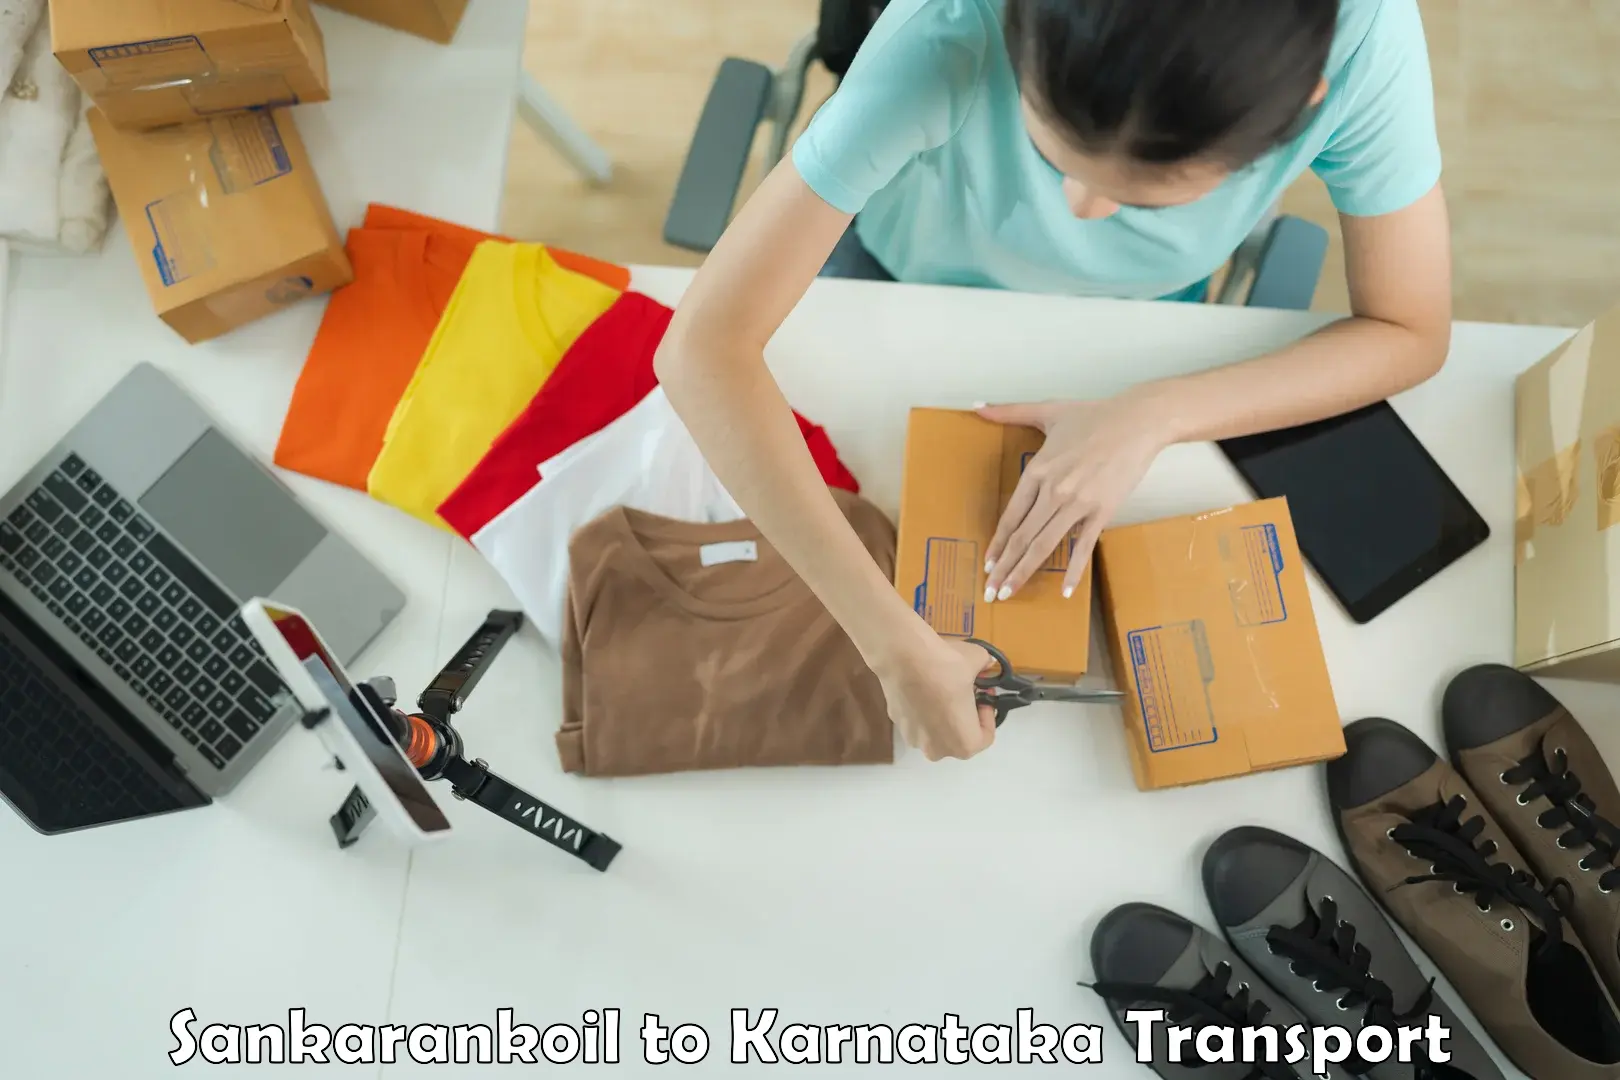 Furniture transport service Sankarankoil to Bidar